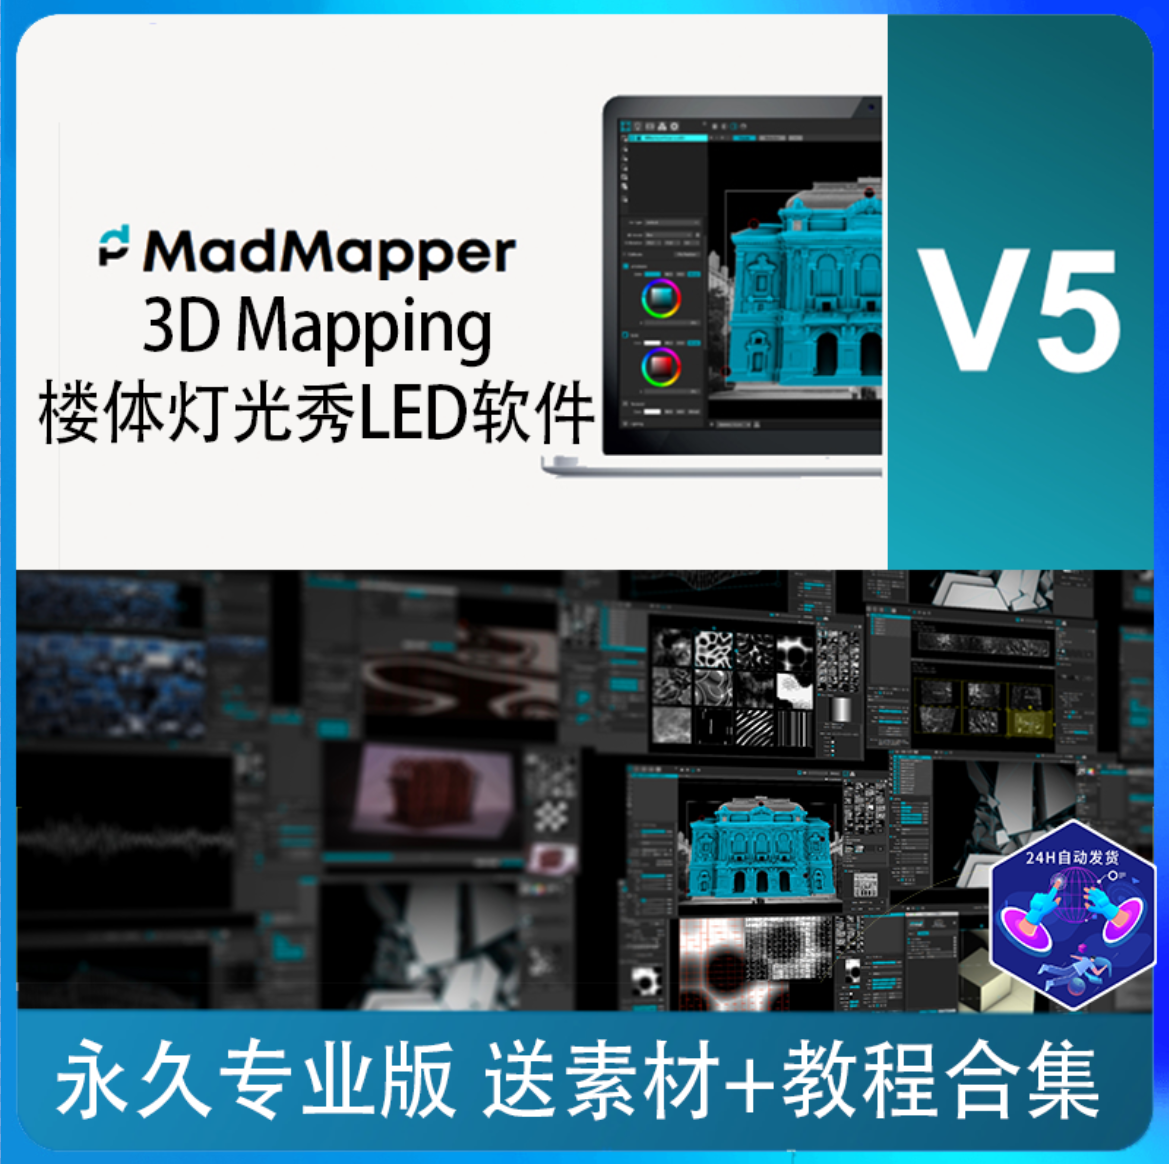 Madmapper 5 LED投影VJ软件 mad mapper永久授权专业版3D mapping